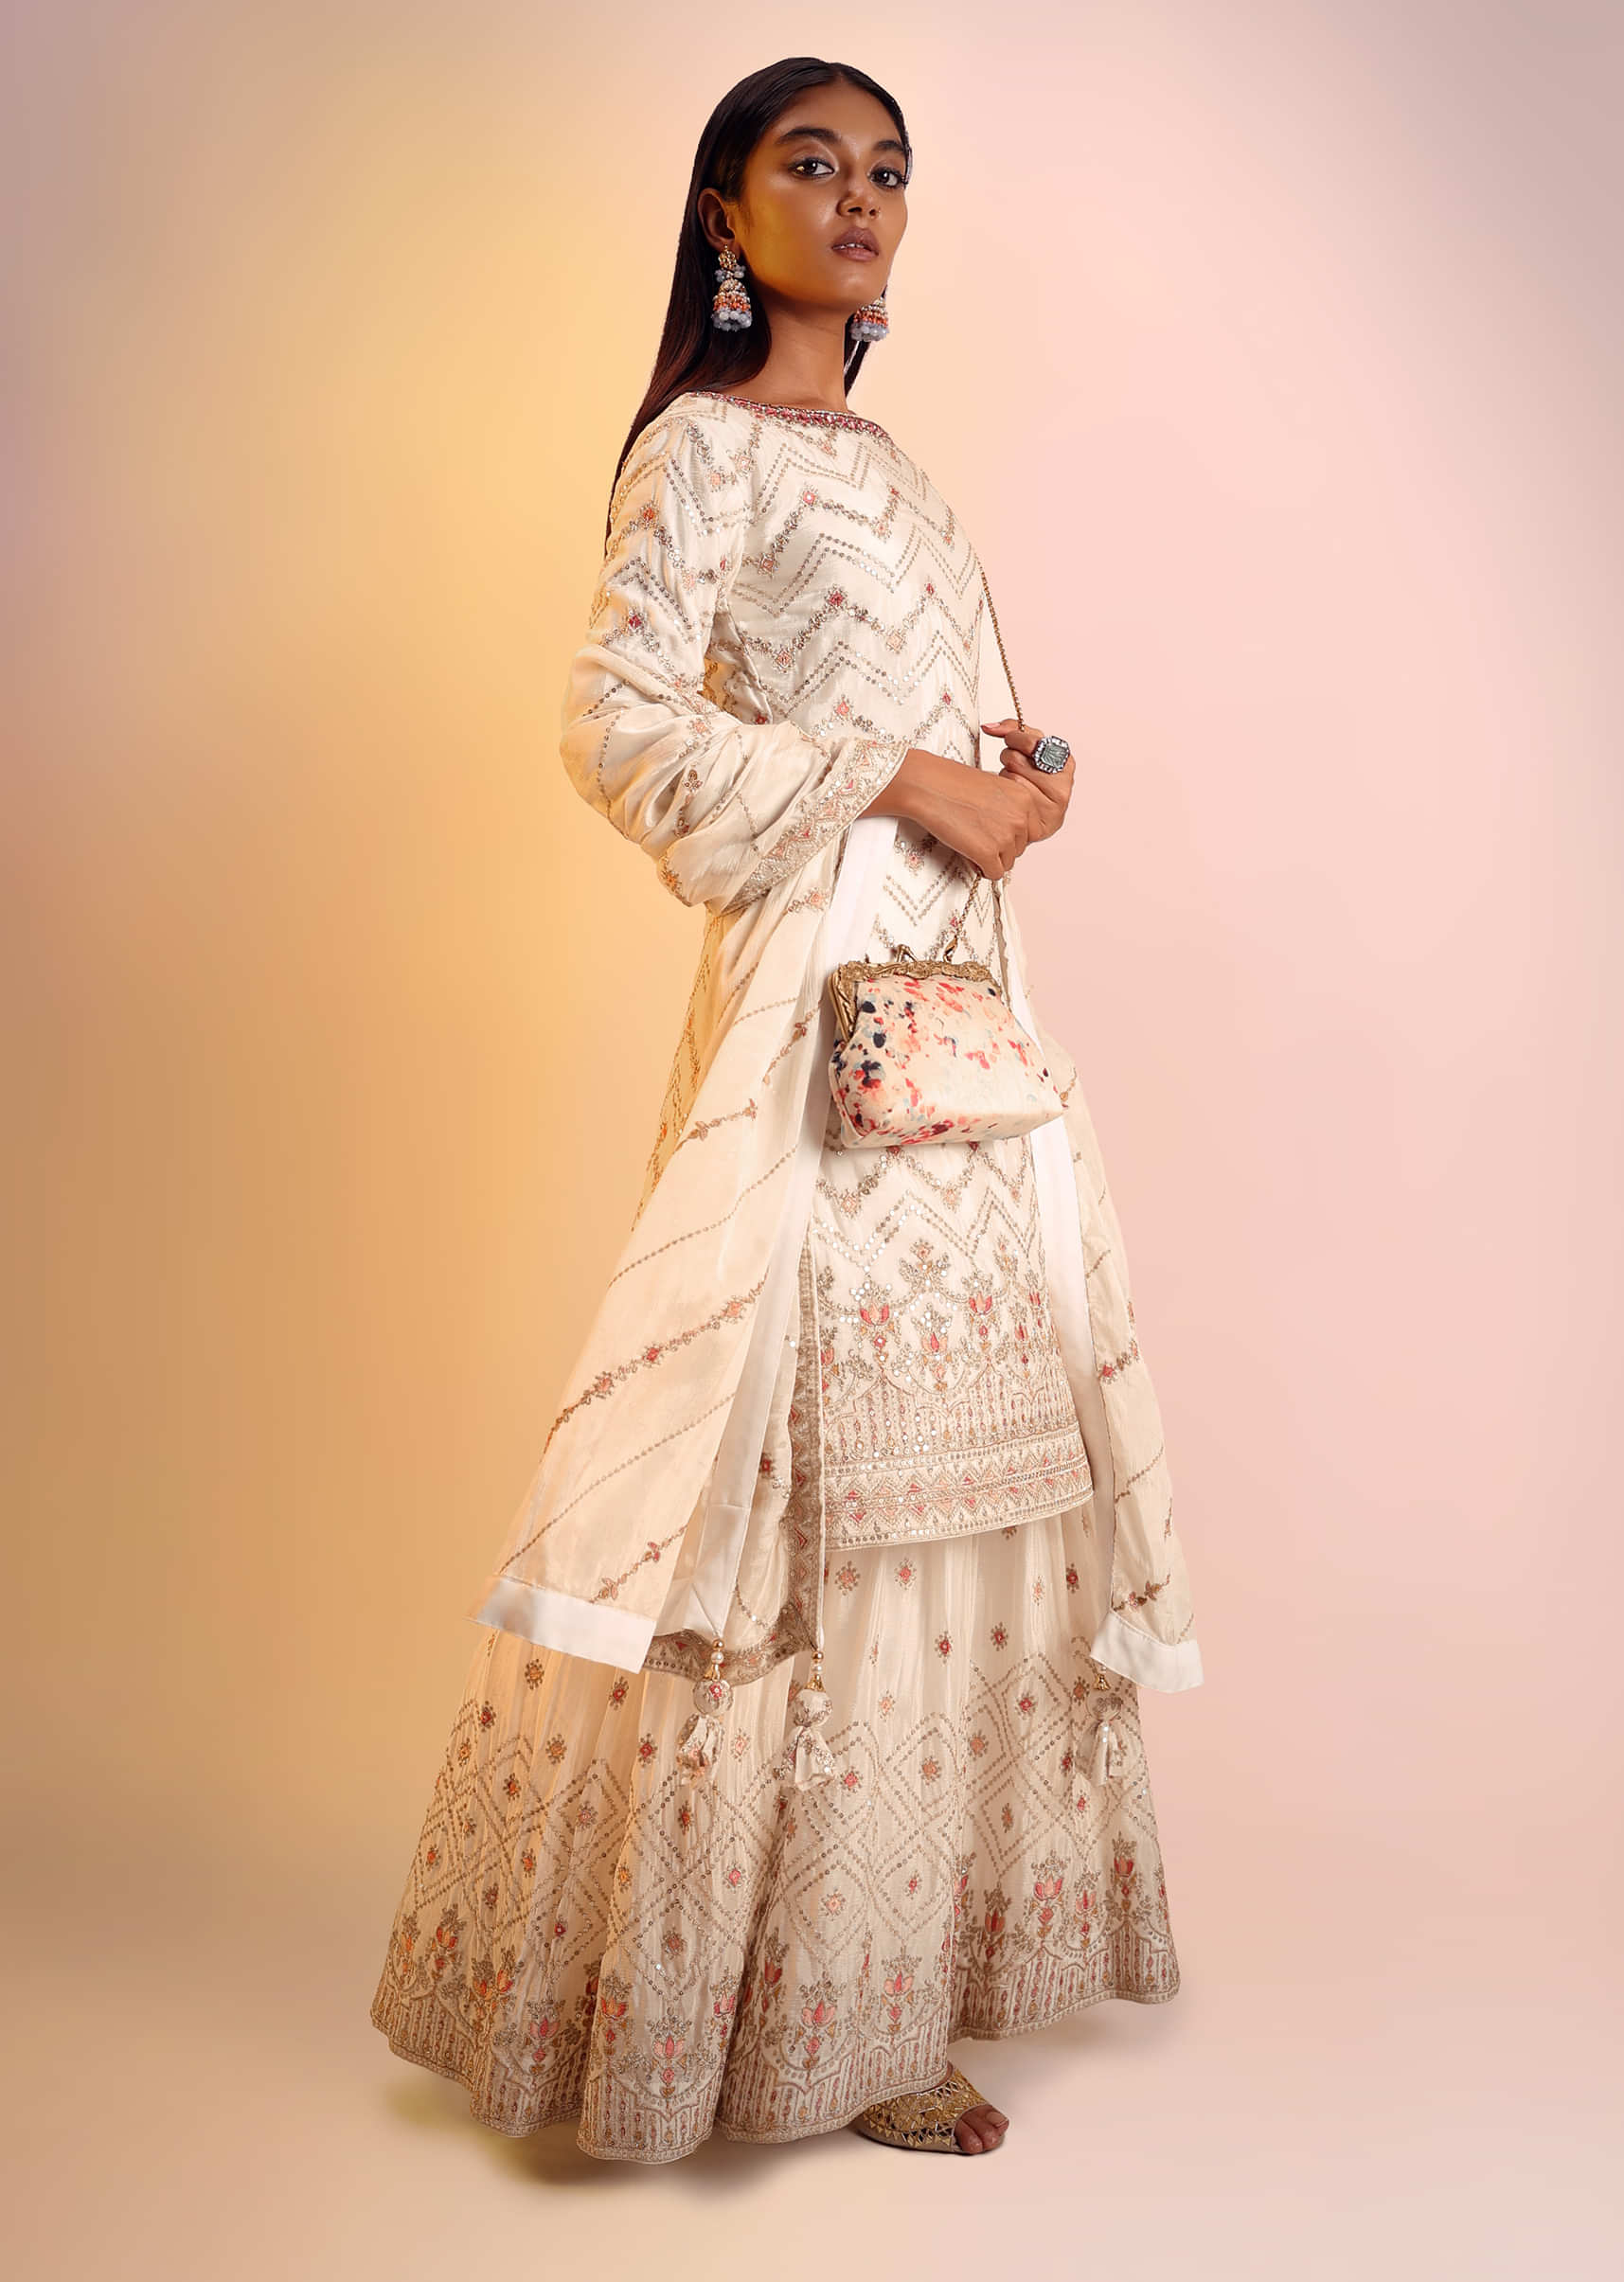 Off White Sharara Suit In Chinon Chiffon With Multi Colored Resham And Zari Embroidered Chevron Design